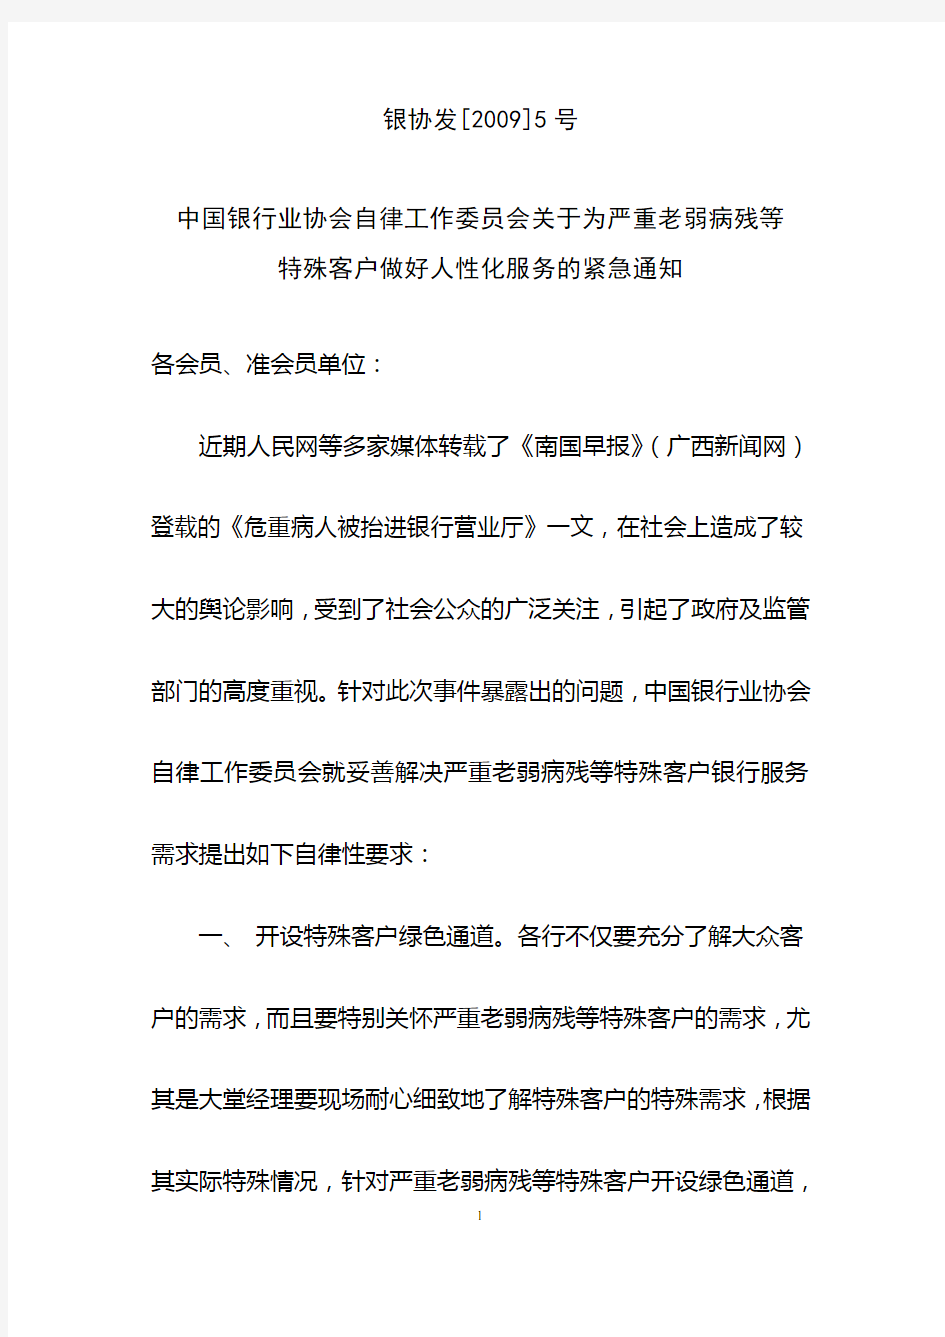 中国银行业协会自律工作委员会关于为严重老弱病残等